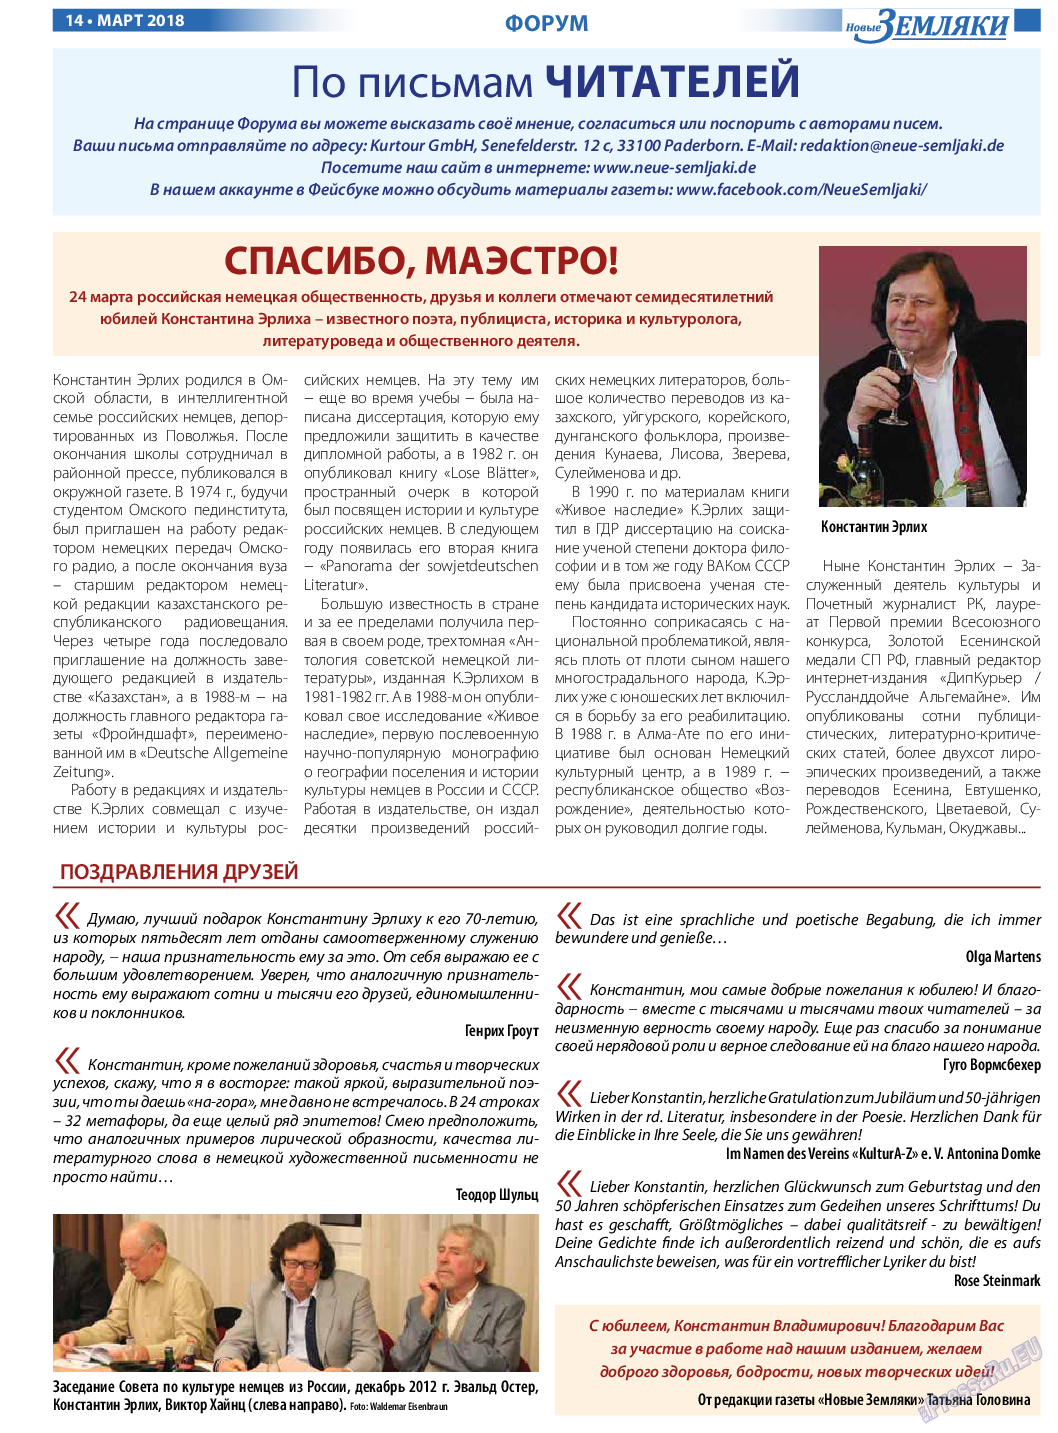 Новые Земляки, газета. 2018 №3 стр.14